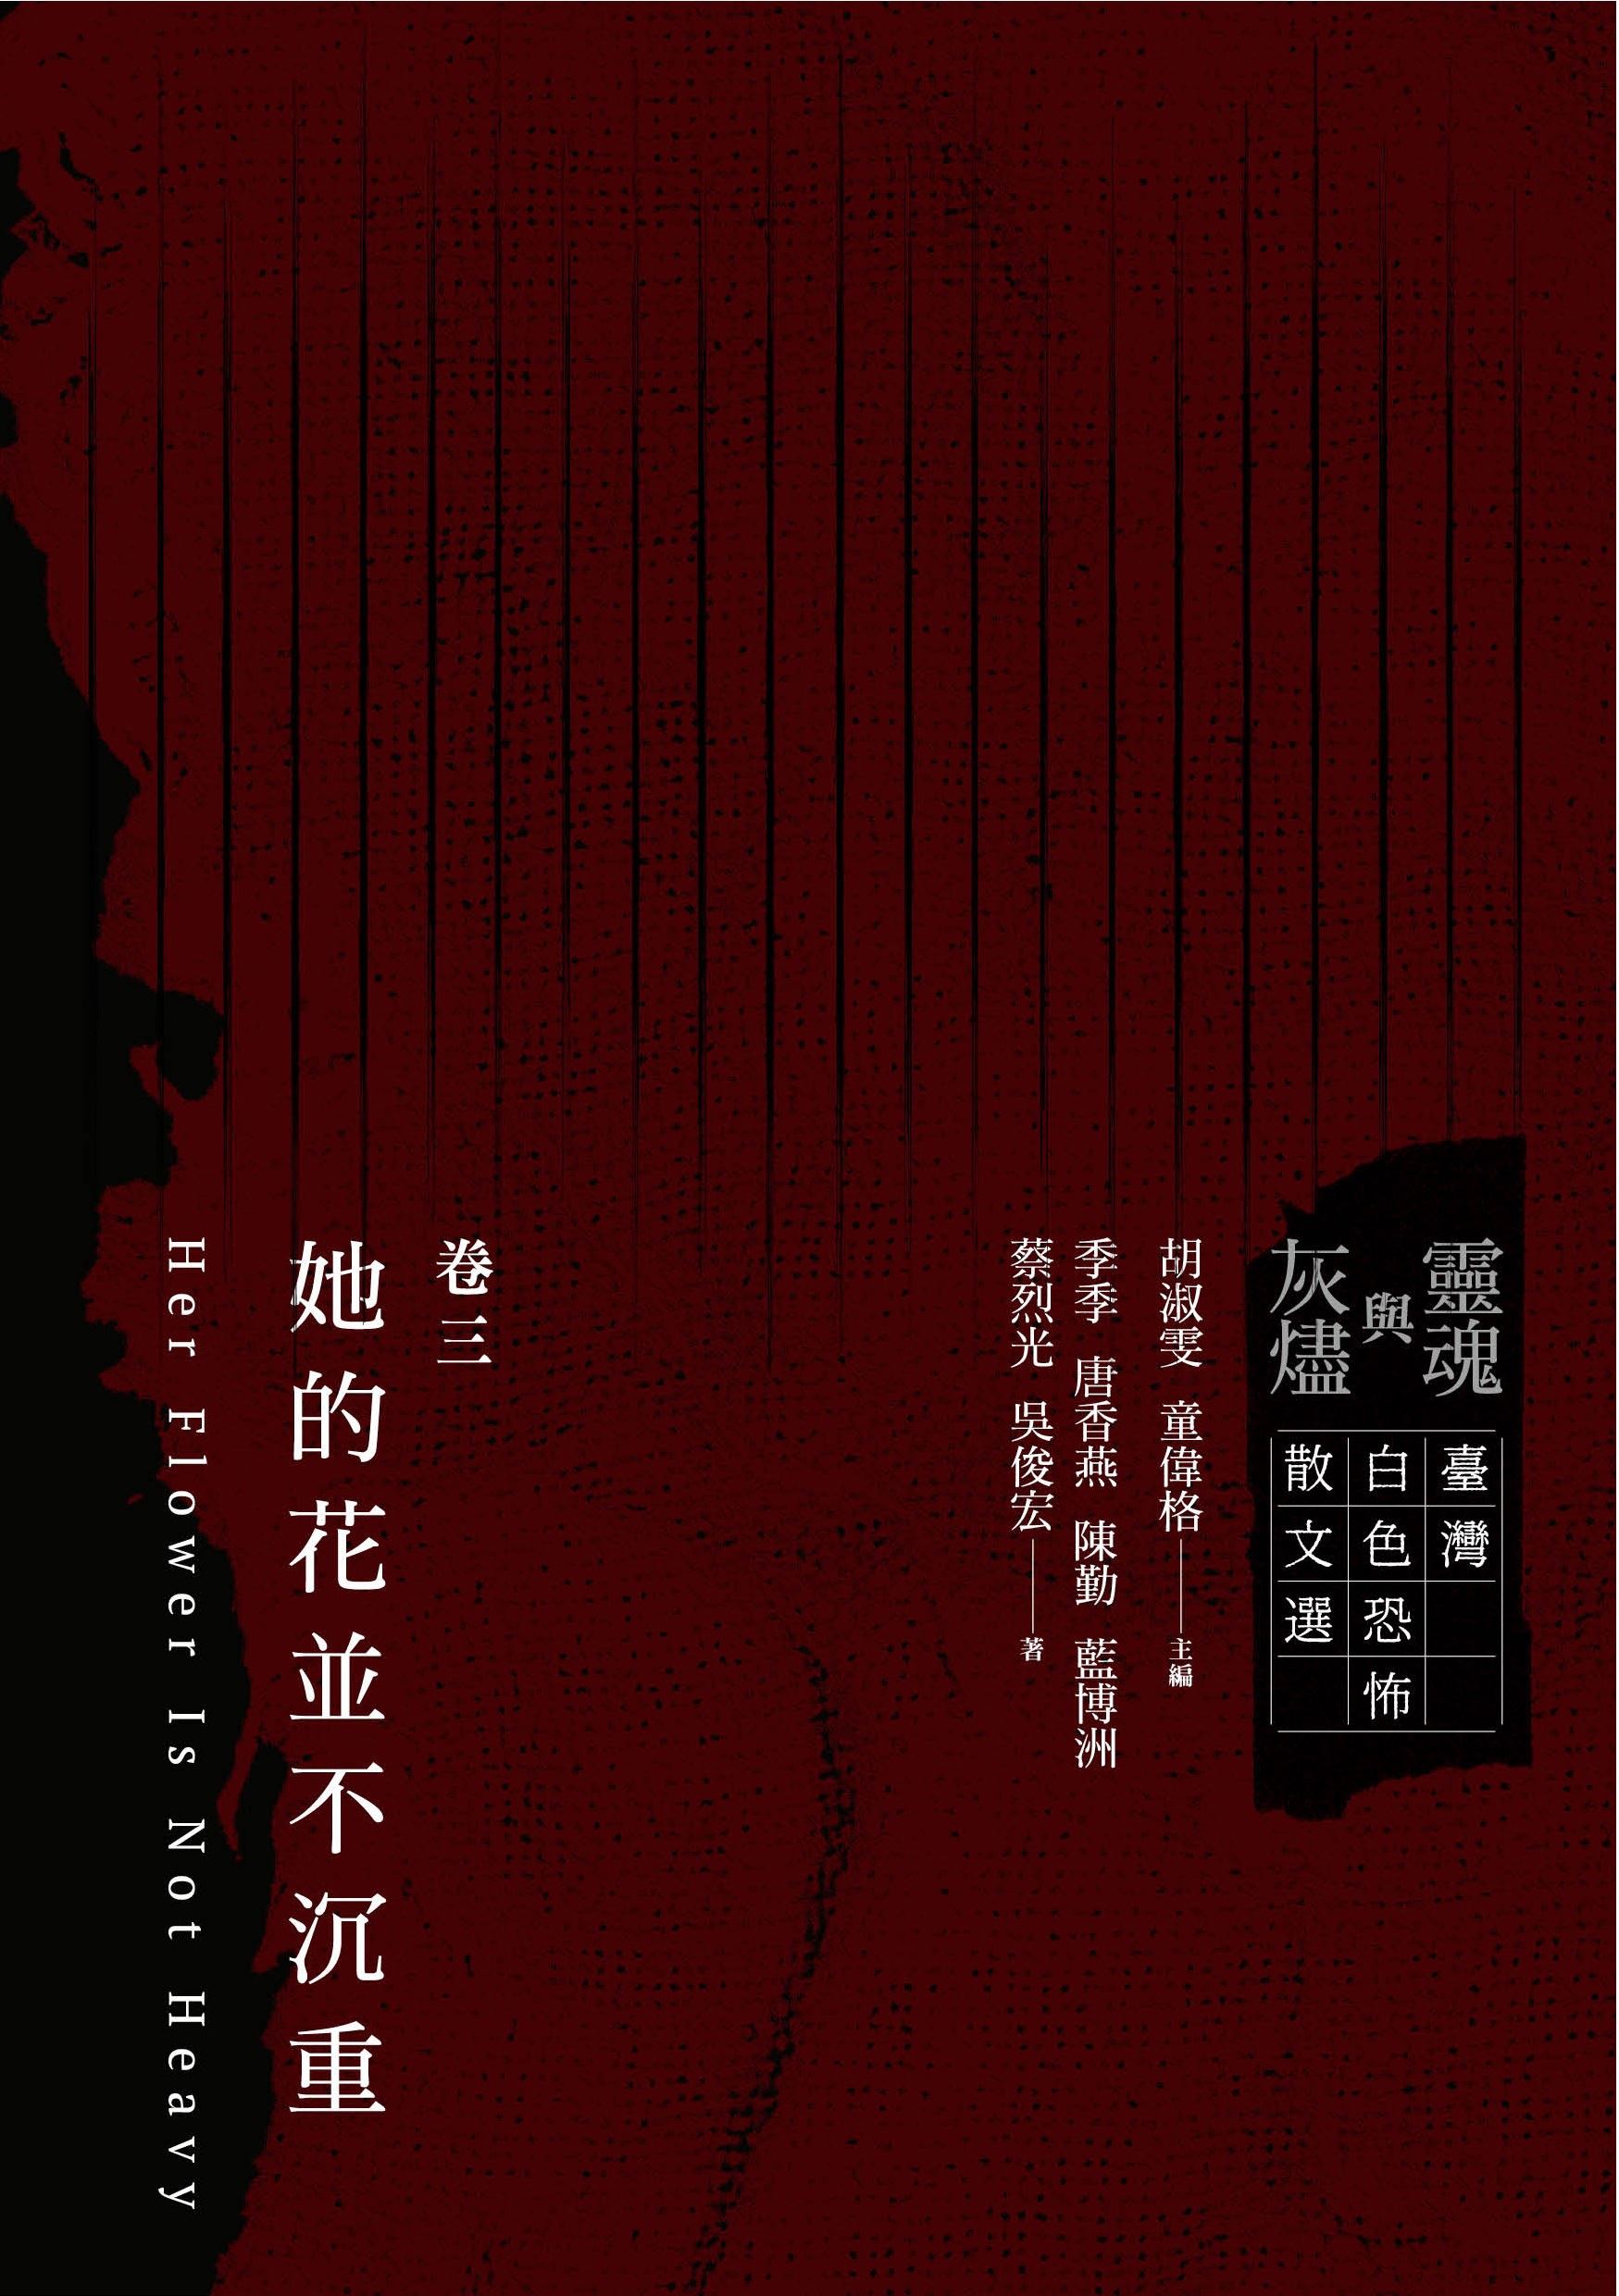 靈魂與灰燼：臺灣白色恐怖散文選 卷三 她的花並不沉重 的圖說